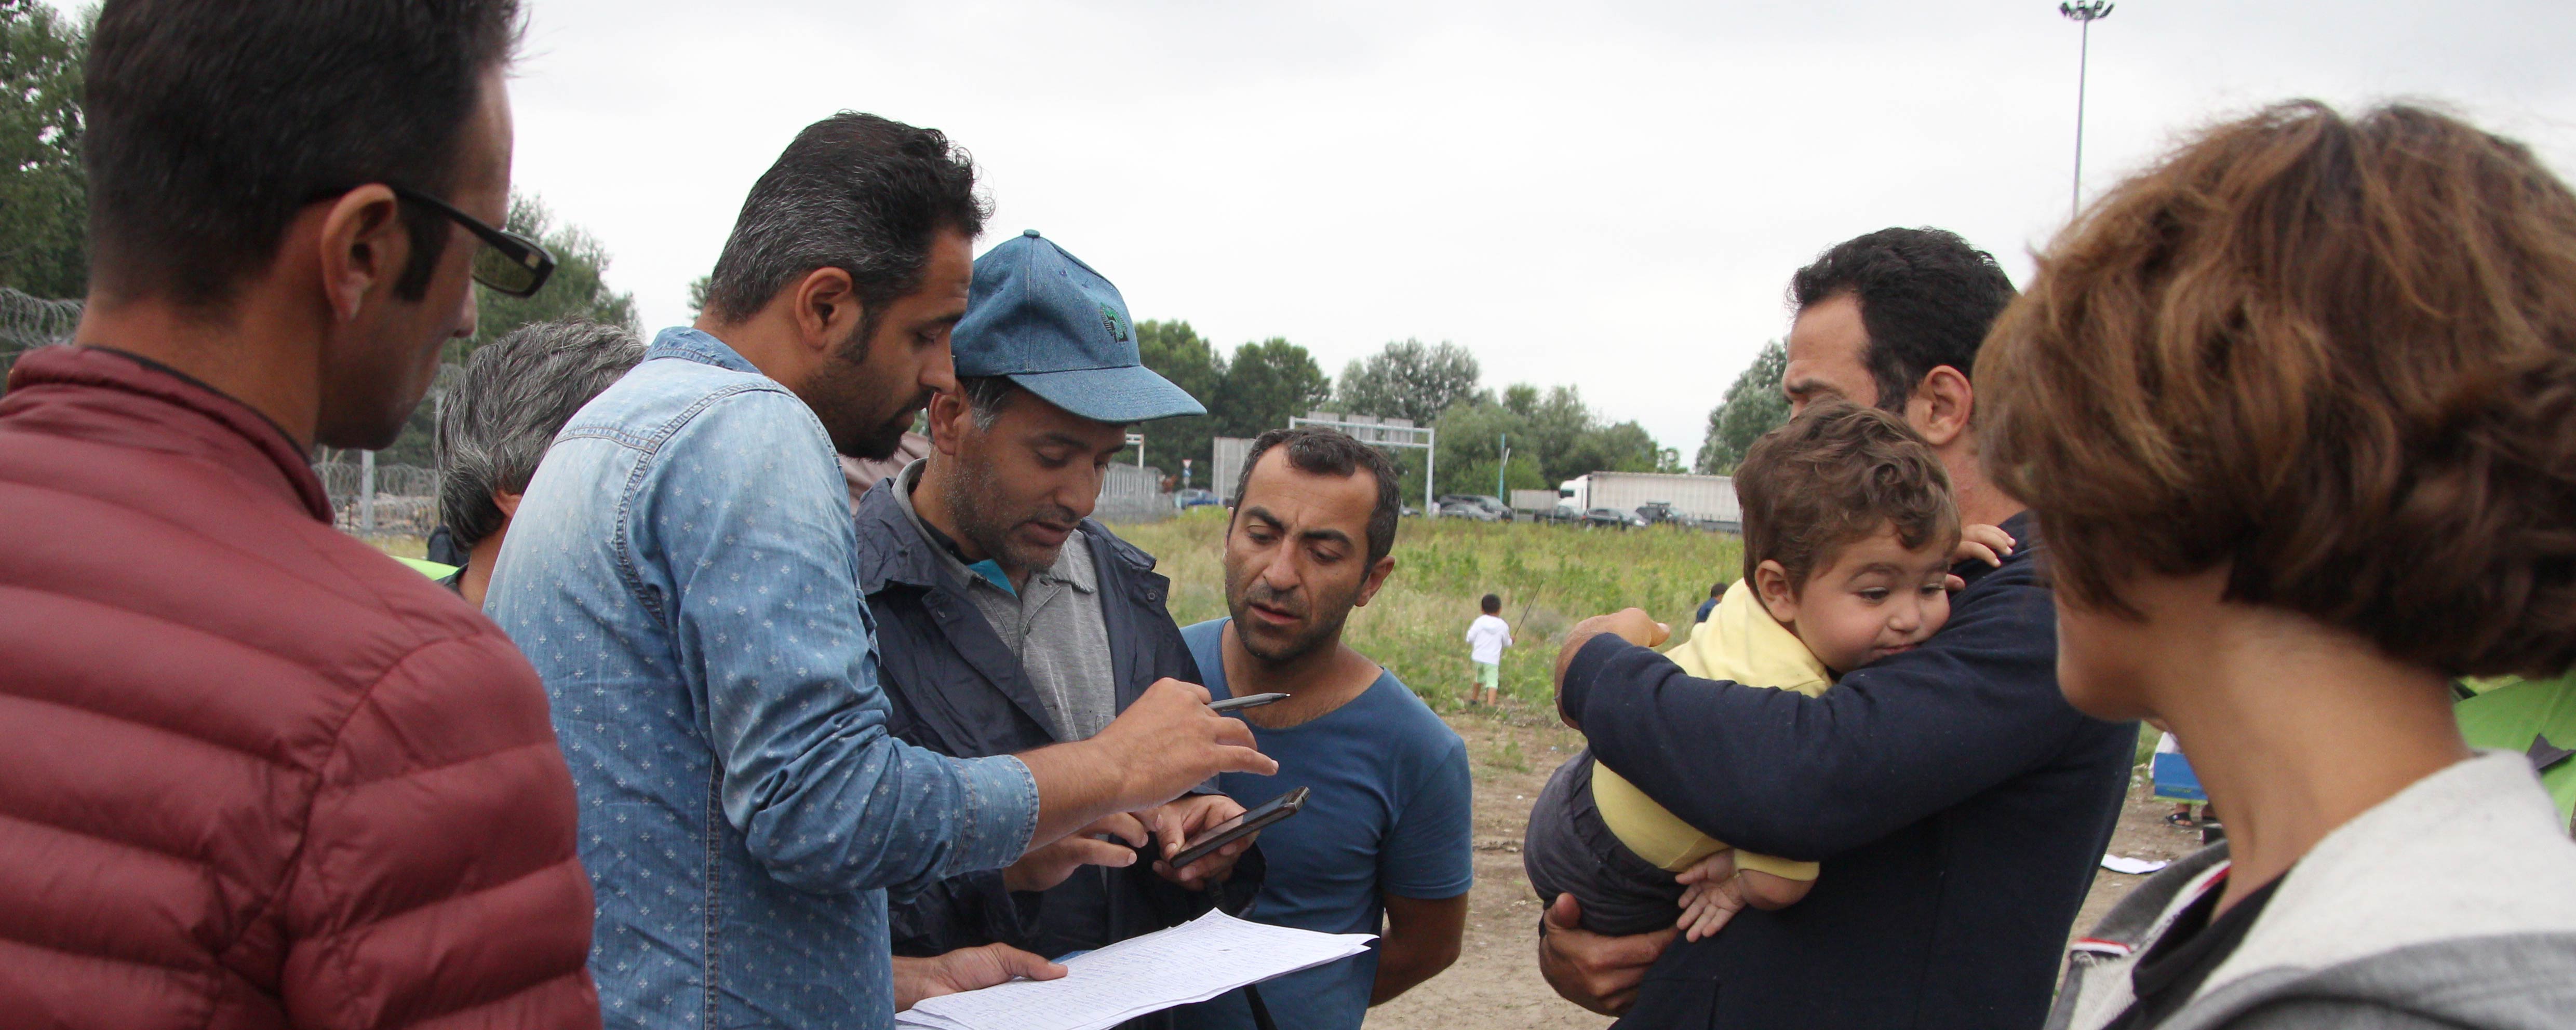 Žiadosti o azyl zo Sýrie, Iraku a ďalších konfliktných zón v prvom polroku 2014 vzrástli